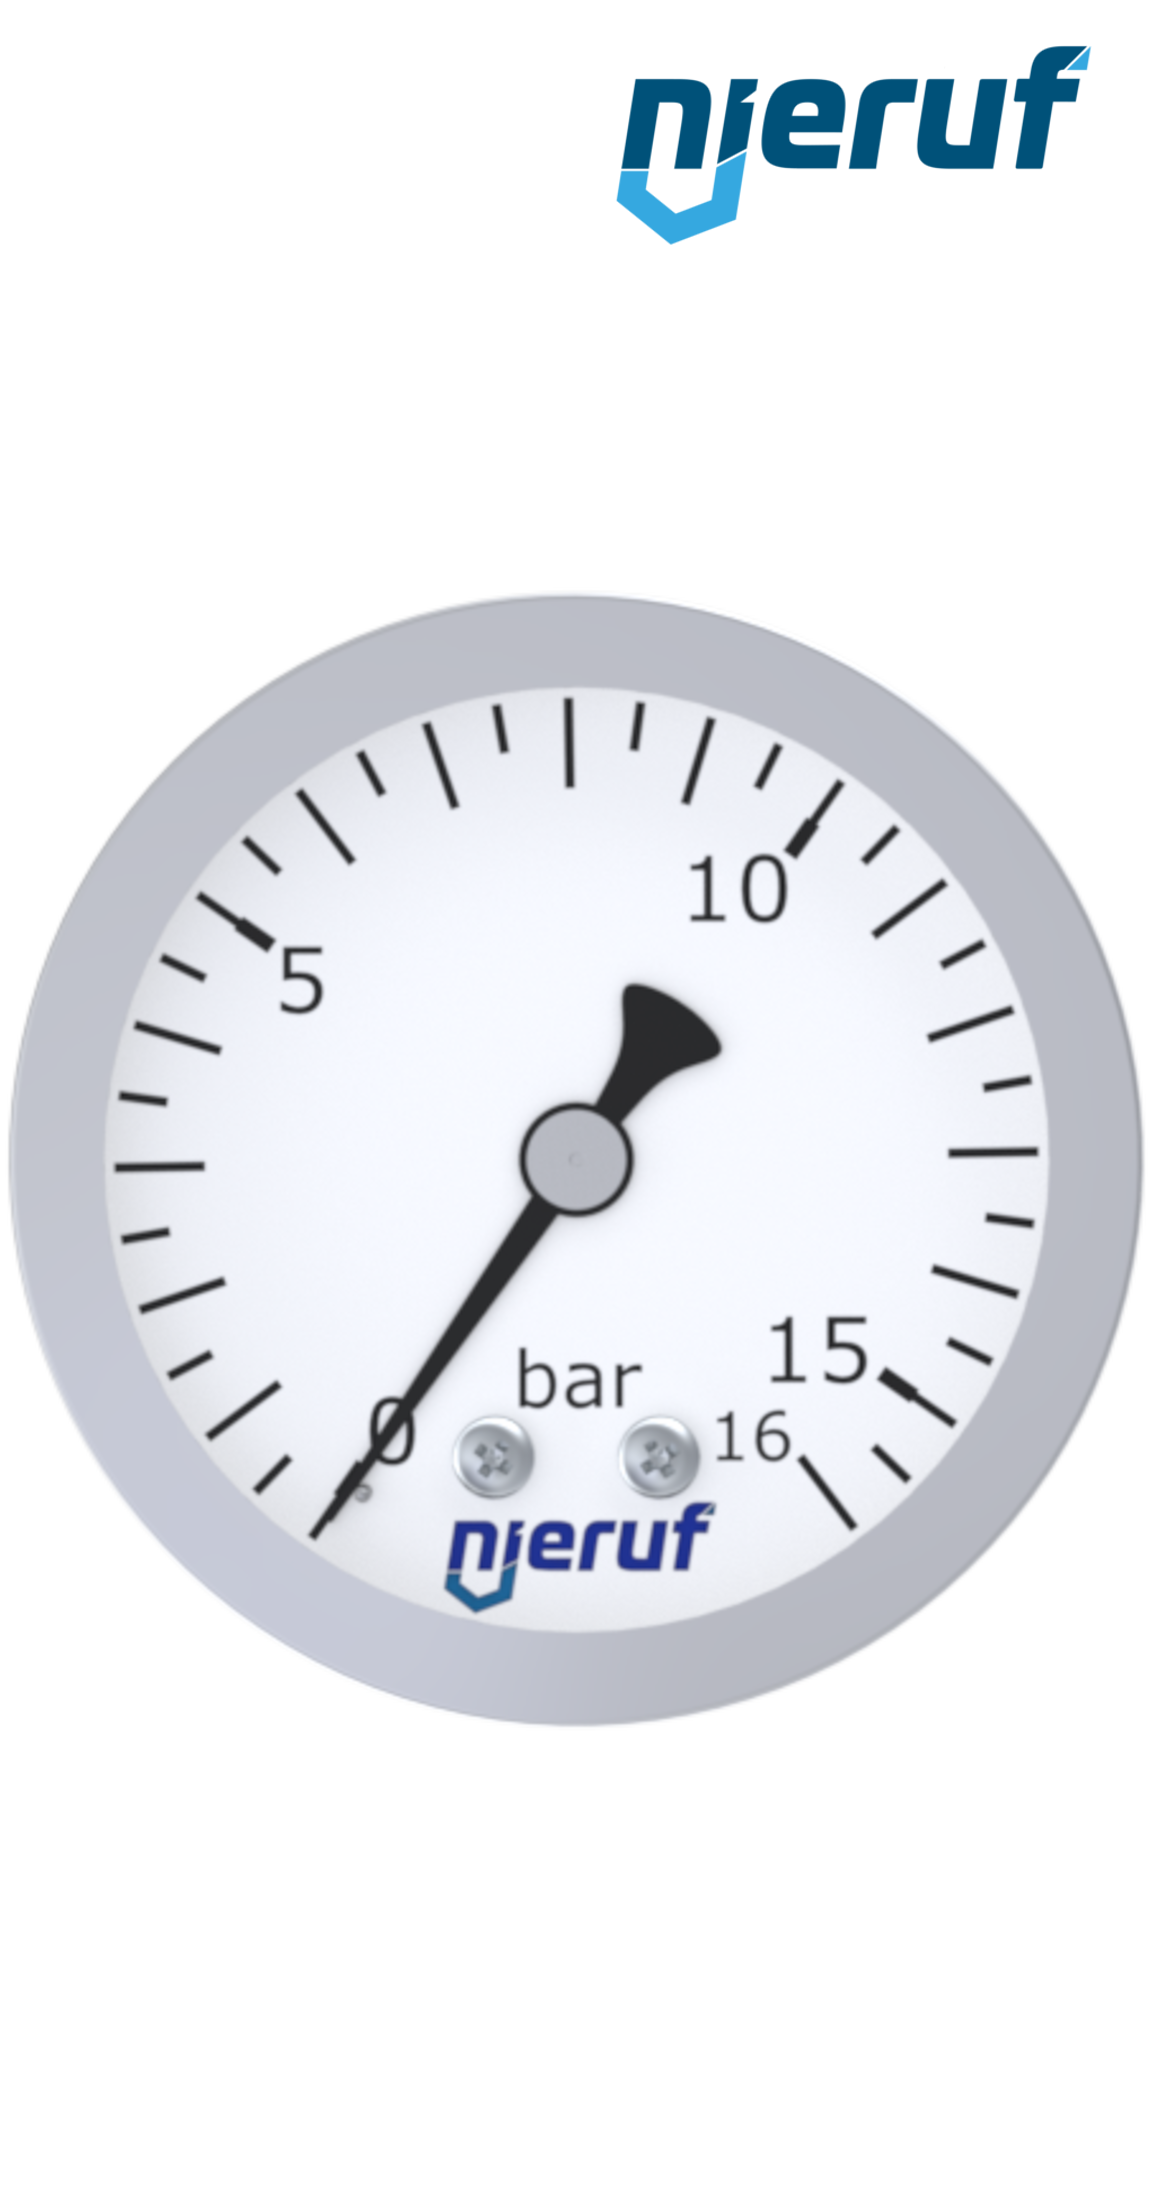 pressure gauge G 1/4" axial 63 mm stainless steel MM06 0 - 25,0 bar